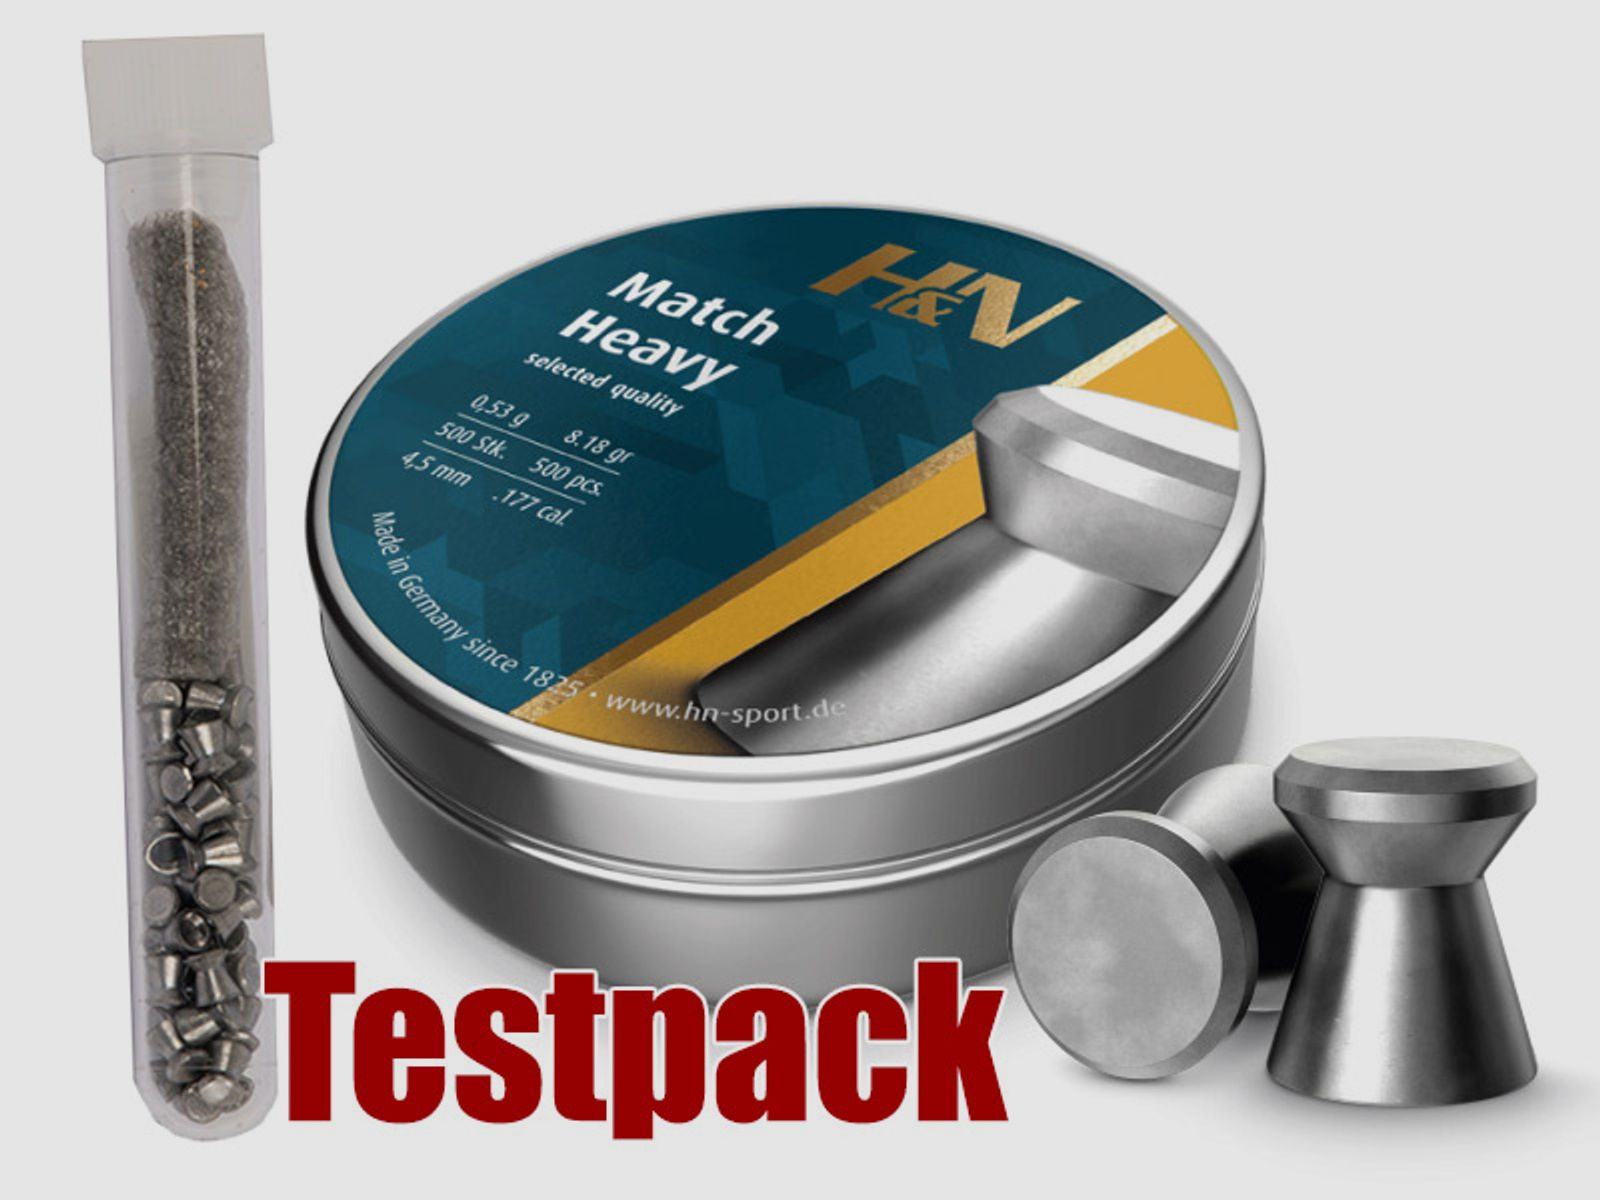 Testpack Flachkopf Diabolos H&N Match Heavy Kaliber 4,5 mm 0,53 g glatt 40 StĂĽck